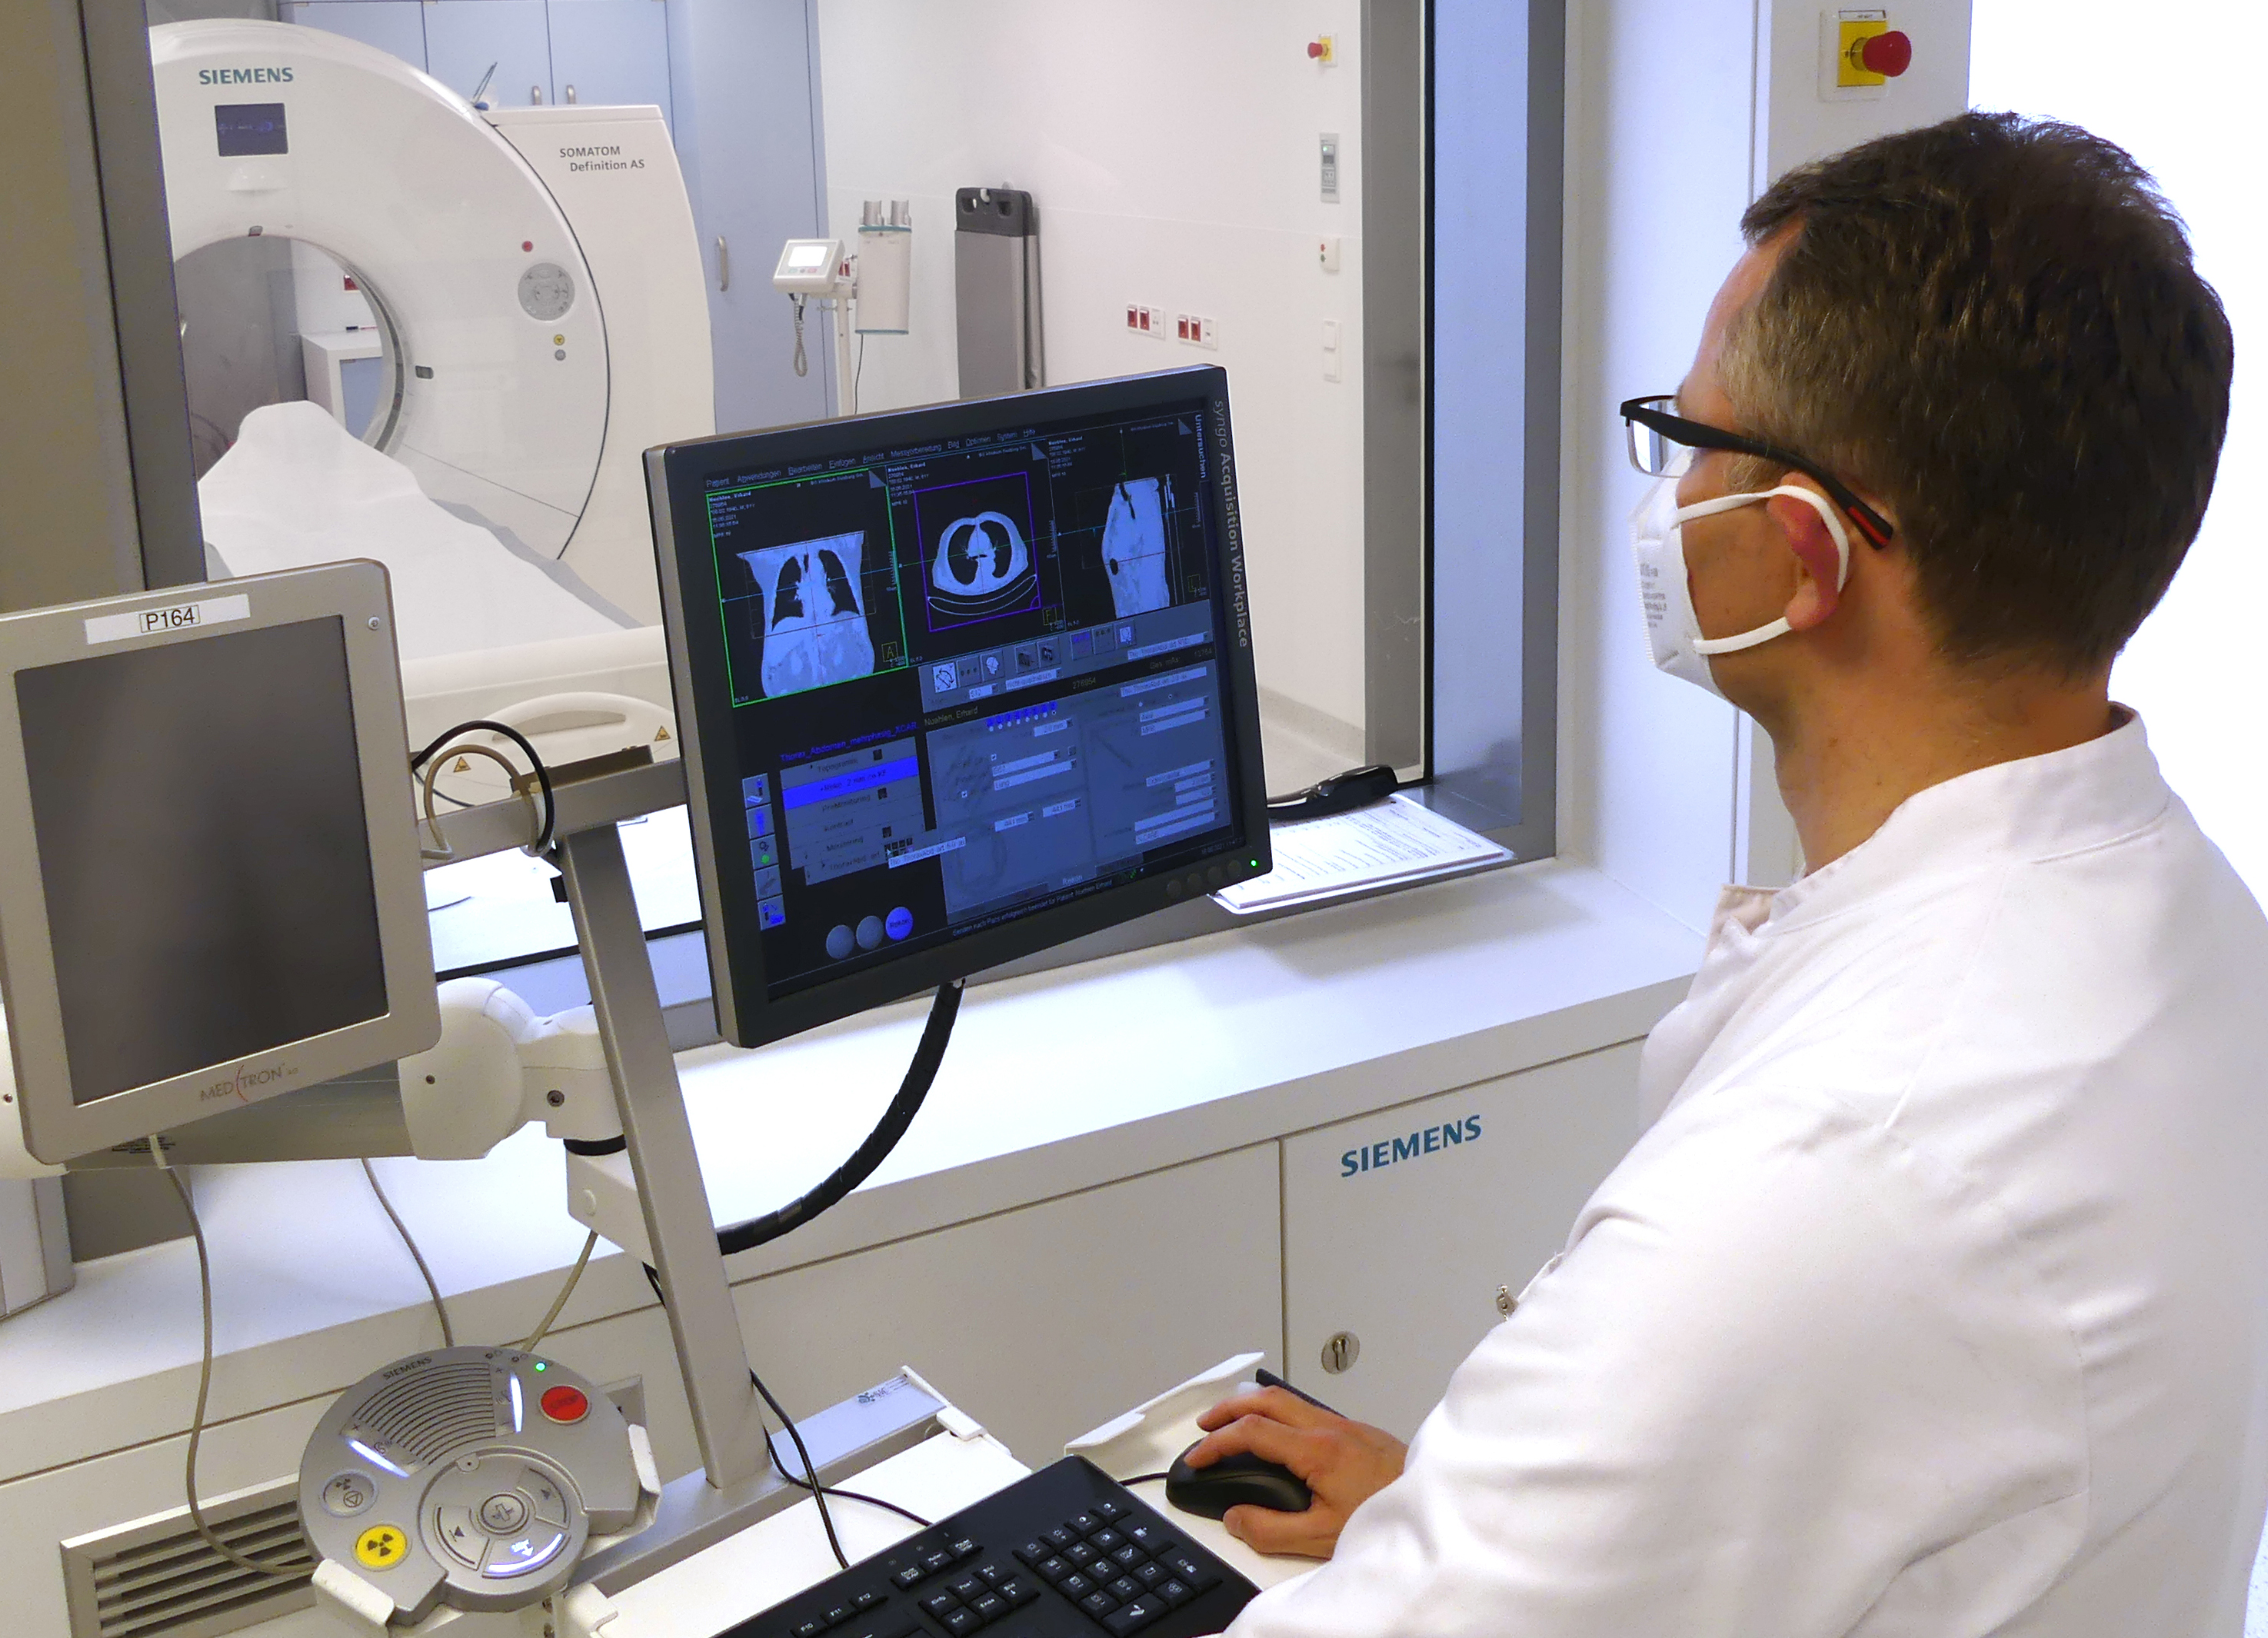 <p>Prof. Dr. med. Patric Kröpil bei der Arbeit mit dem neuen Gerät. (Bild: BG Klinikum Duisburg/Siemens)</p>